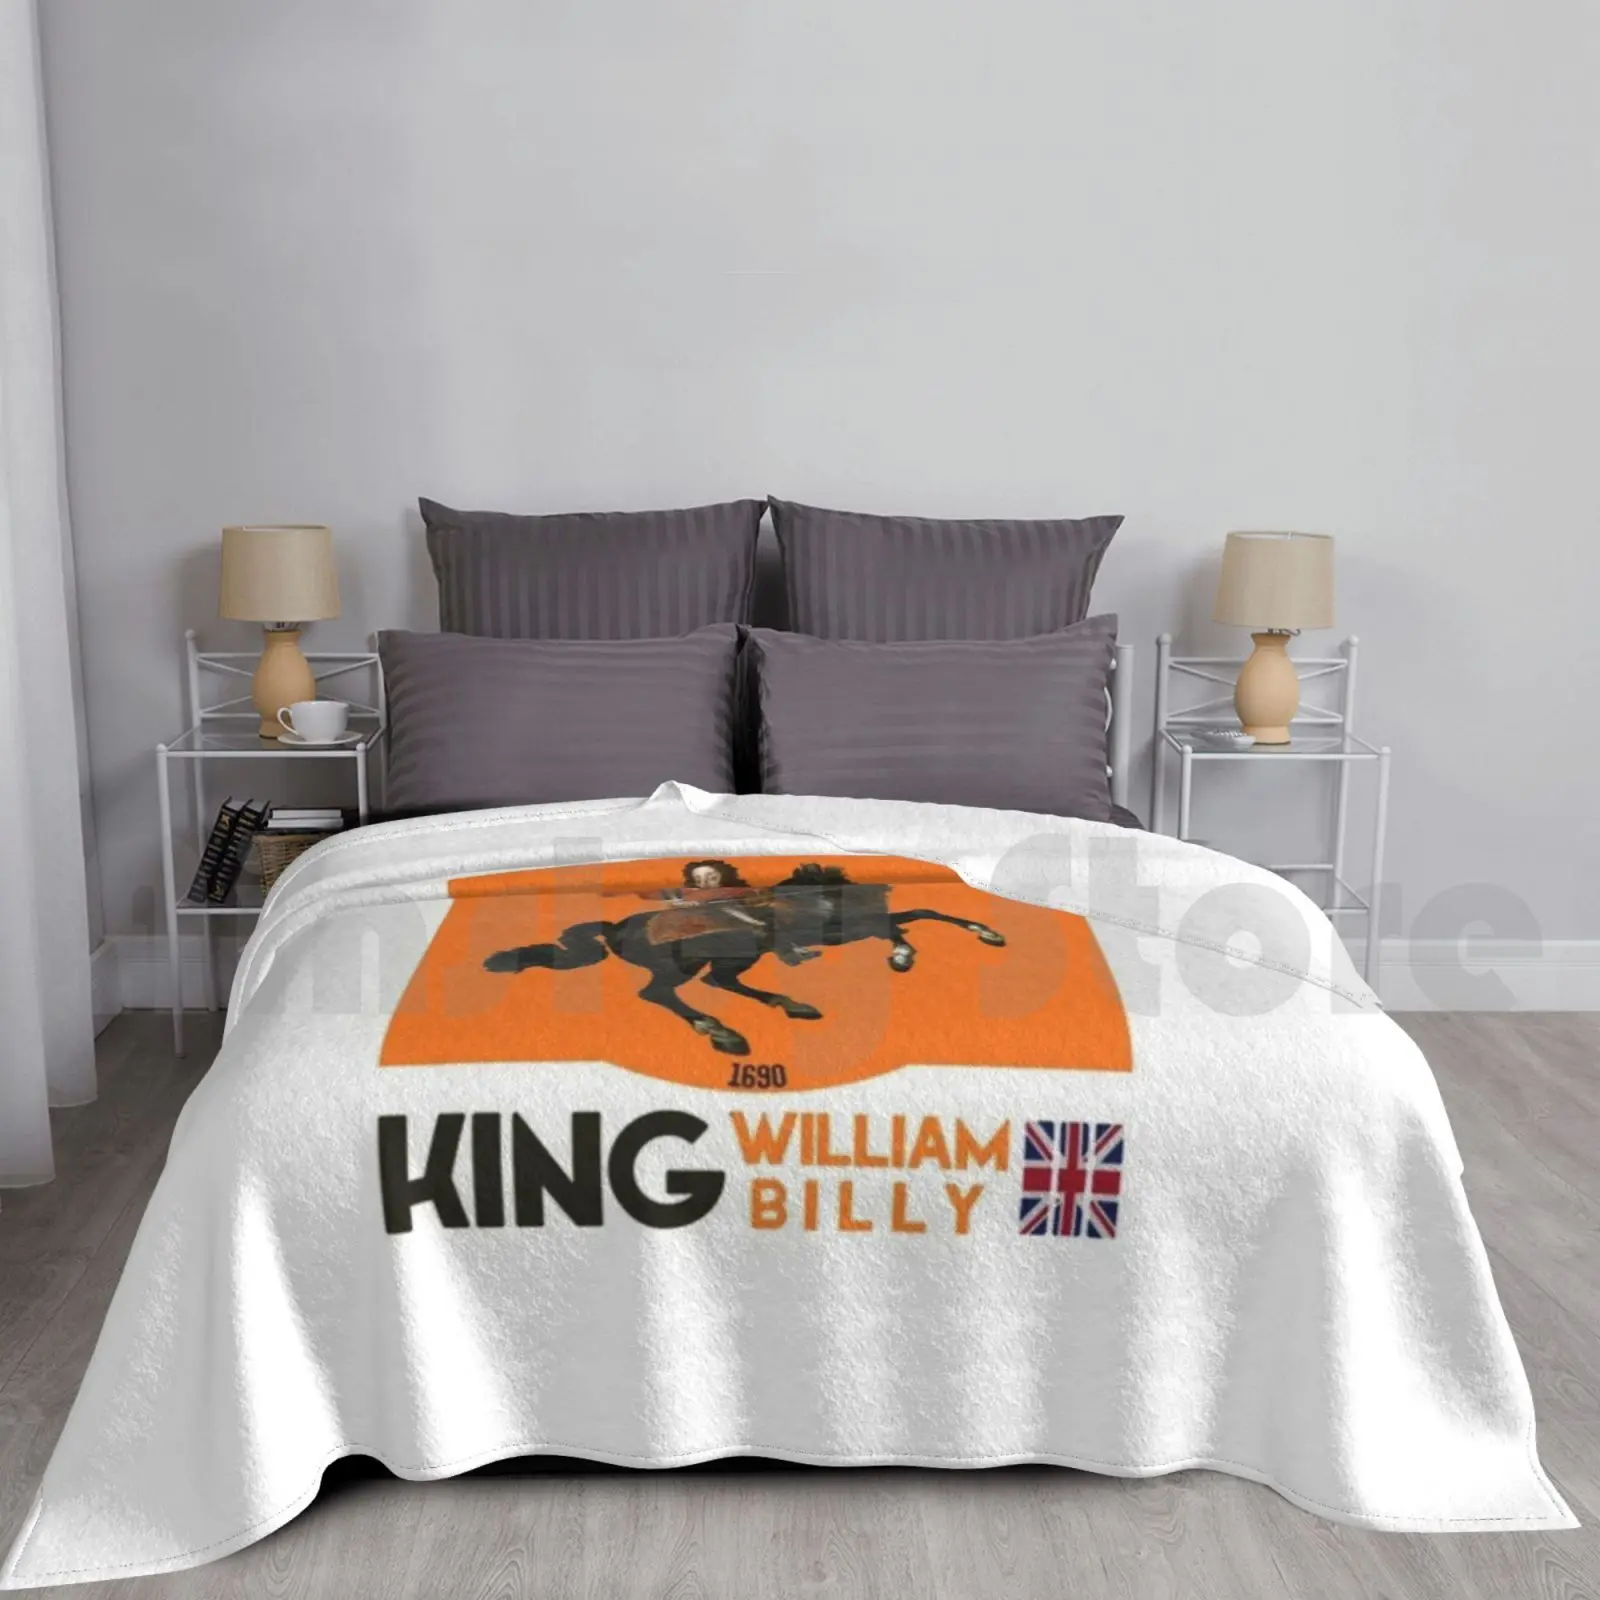 

Король уильянь или король Билли-1690-лоялистичное одеяло, модное традиционное король Уильяма Англия британская история